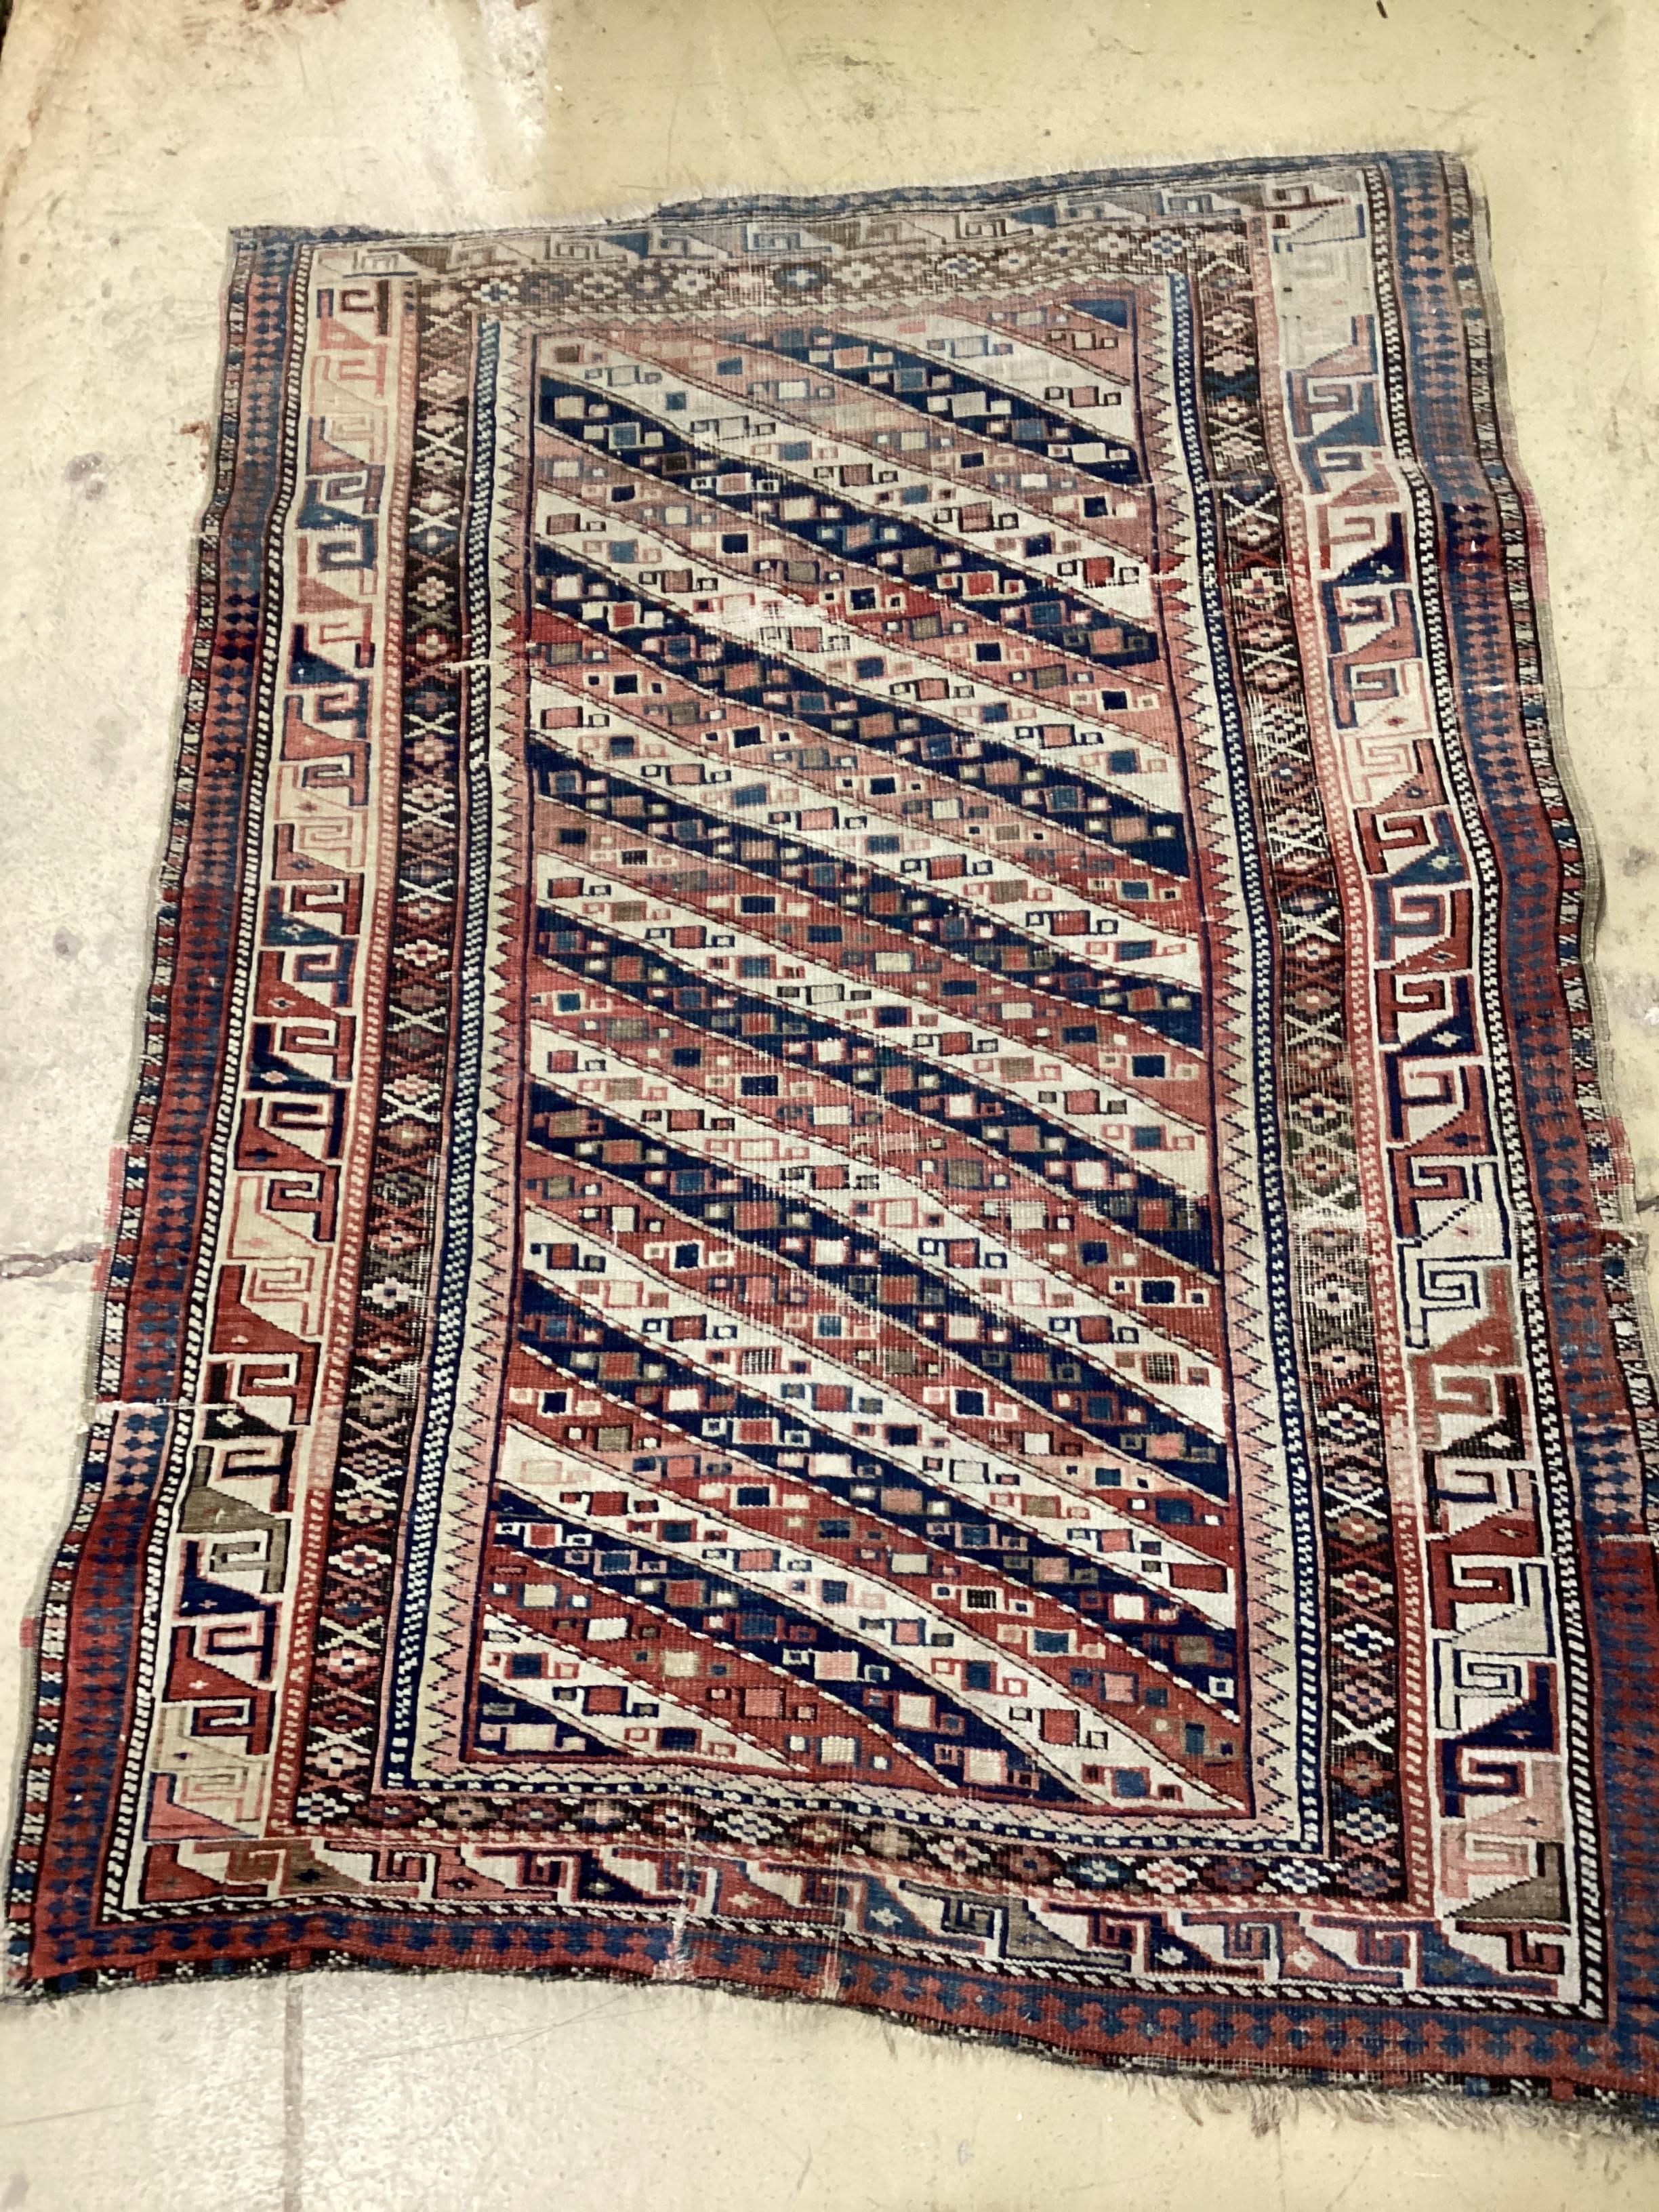 An antique Shirvan rug, 132 x 98cm